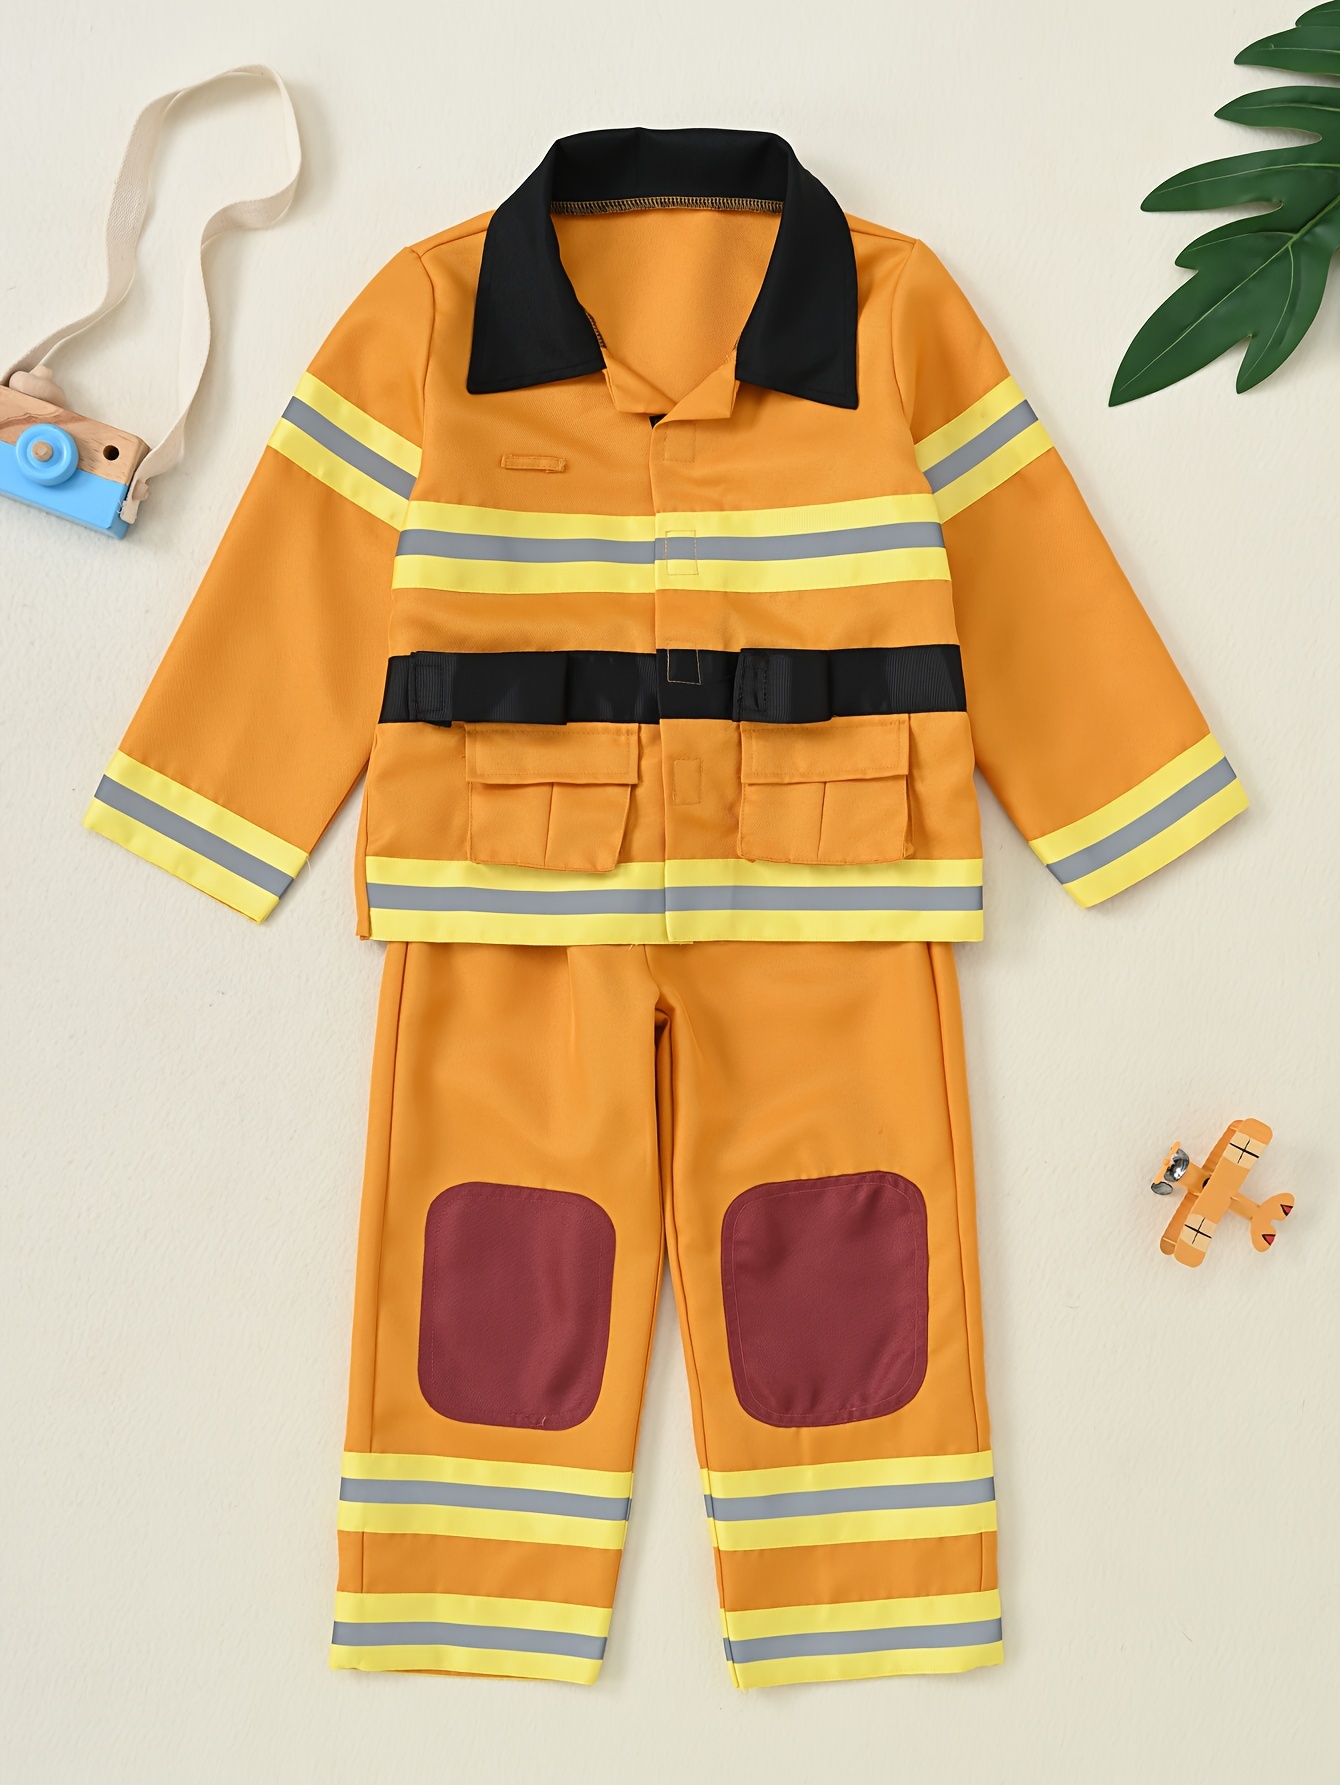 Bauarbeiter-kostüme Für Jungen, Ingenieur-verkleidung, Kinder